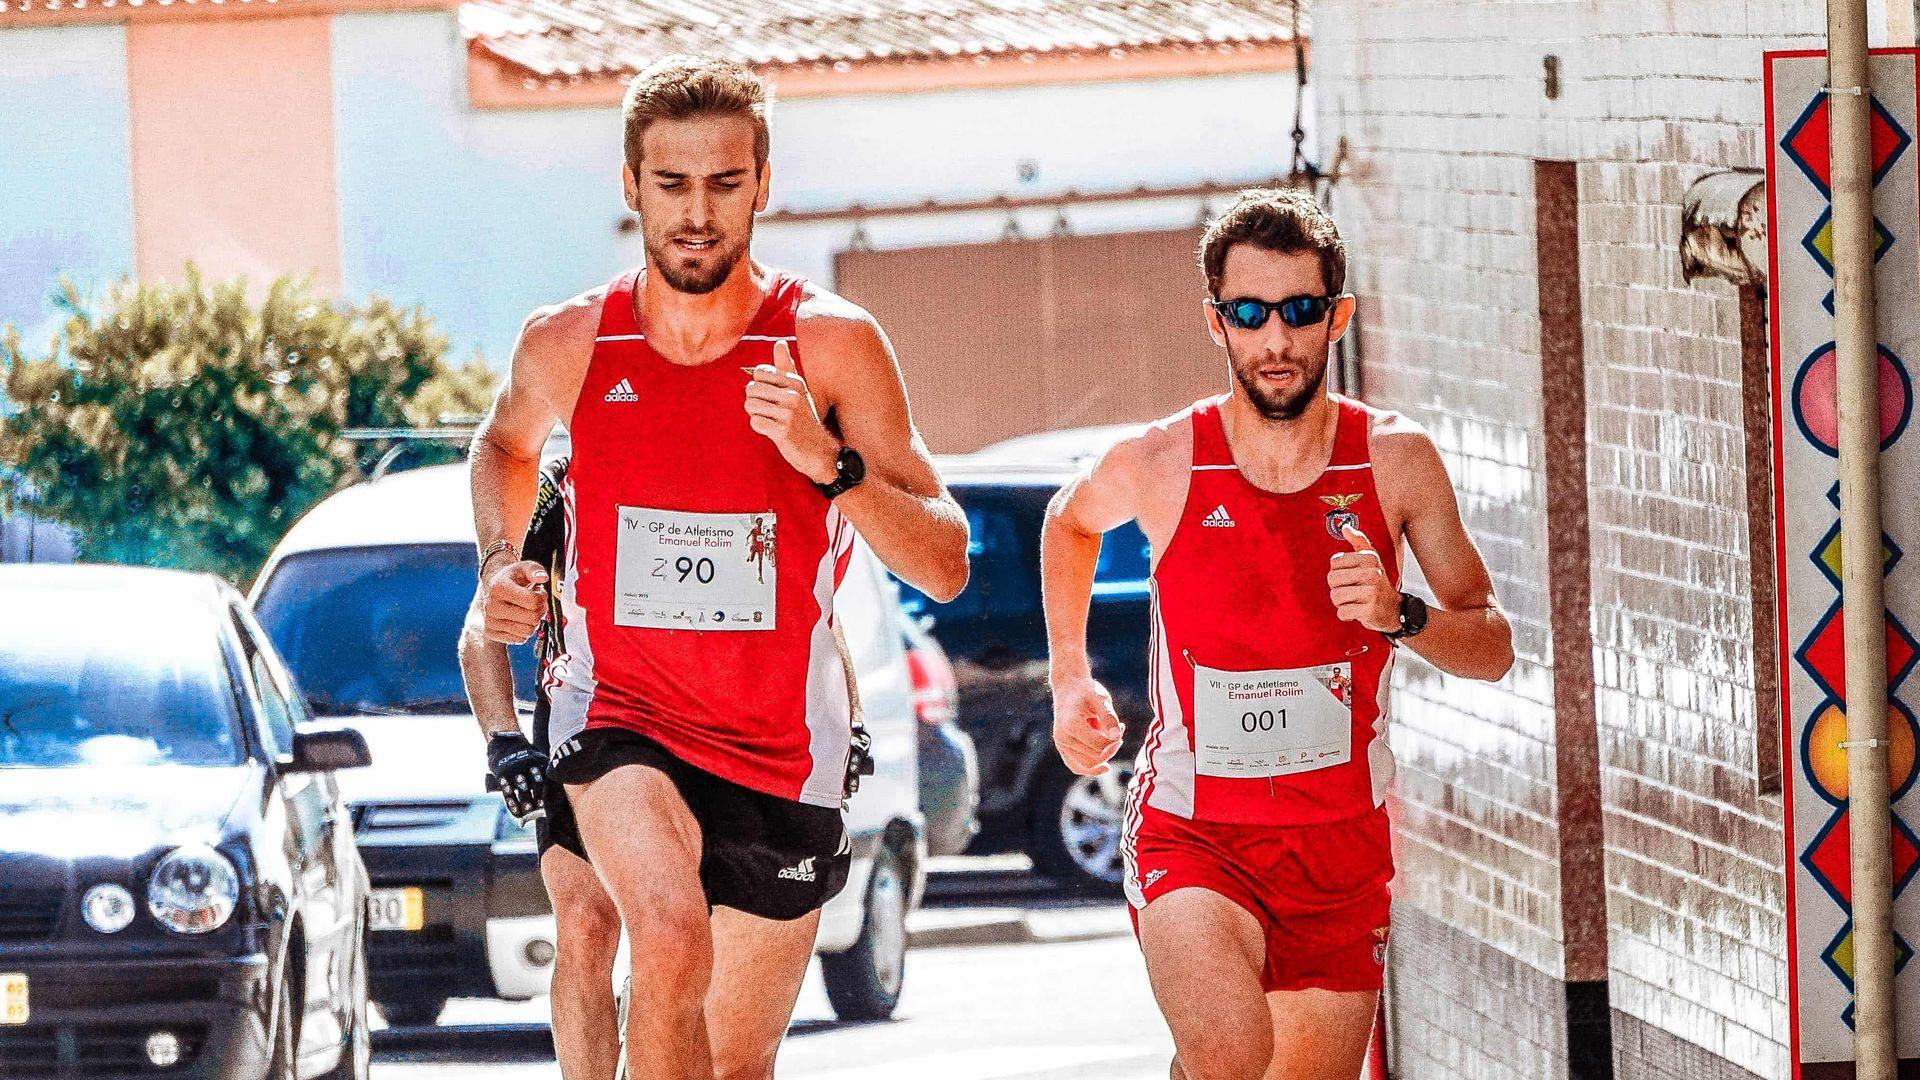 Twee mannelijke lopers doen een marathon in rode singlet